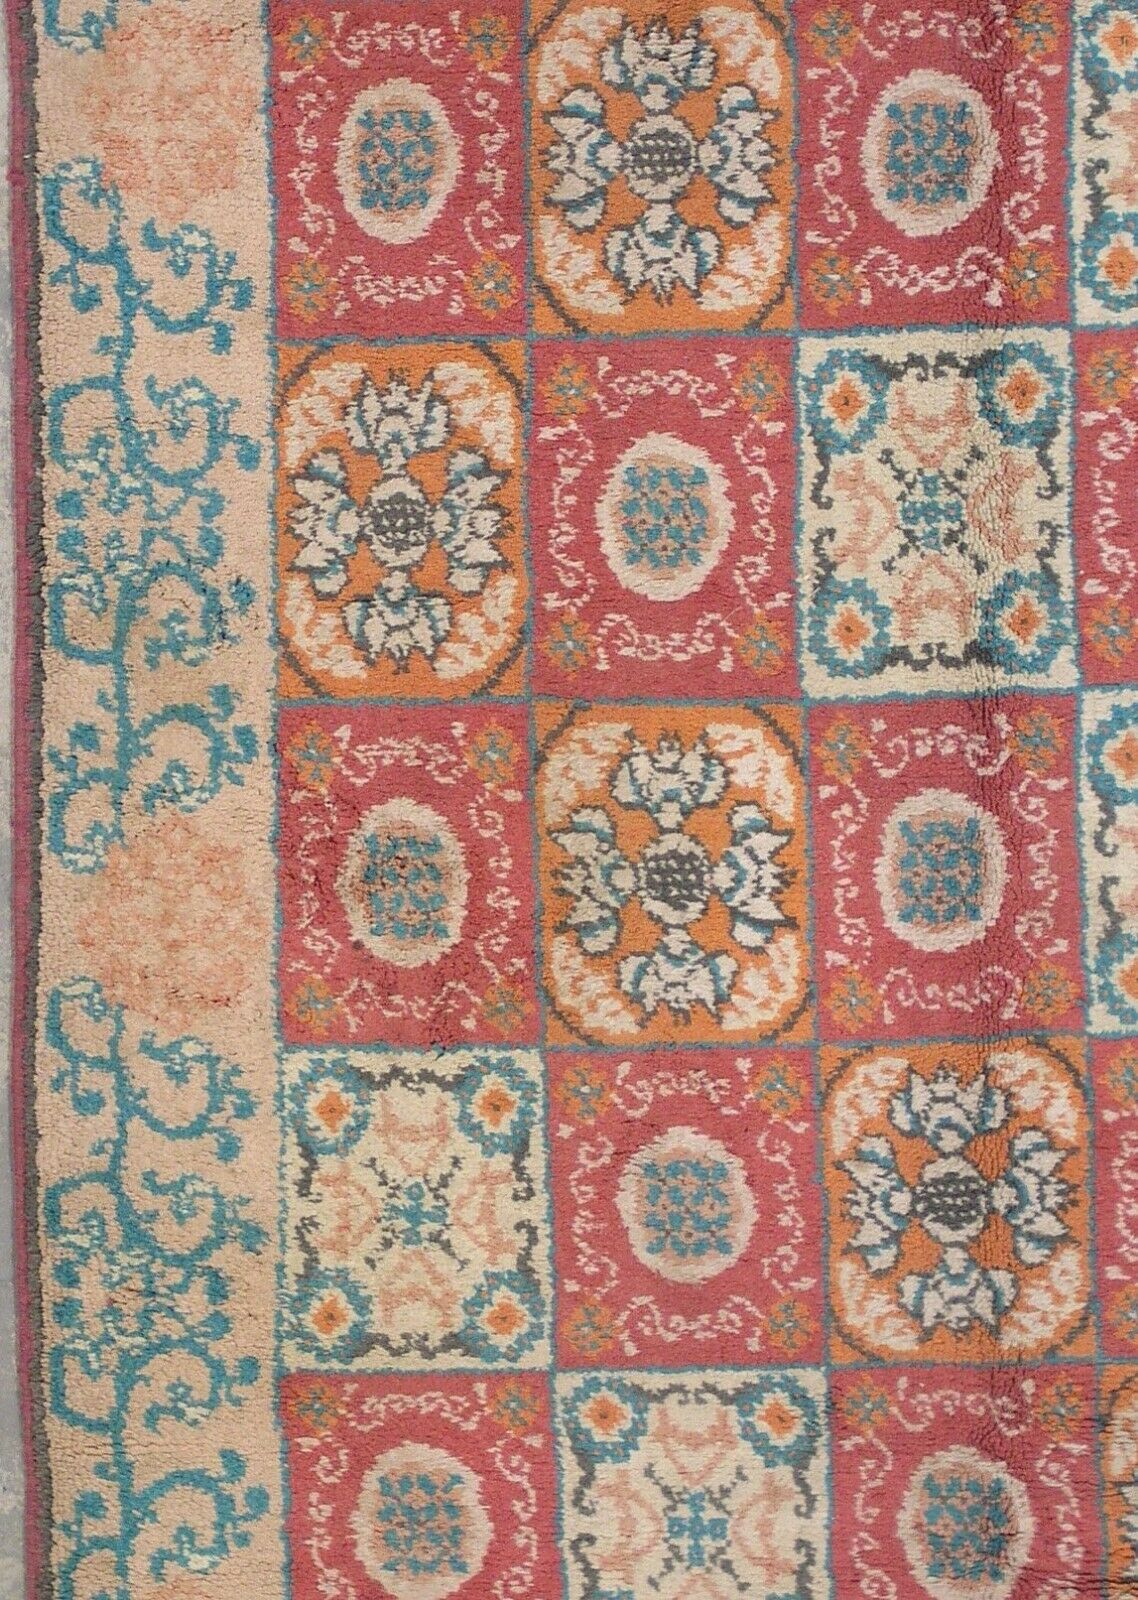 6X9 Antique Red Cotton Agra, circa 1920